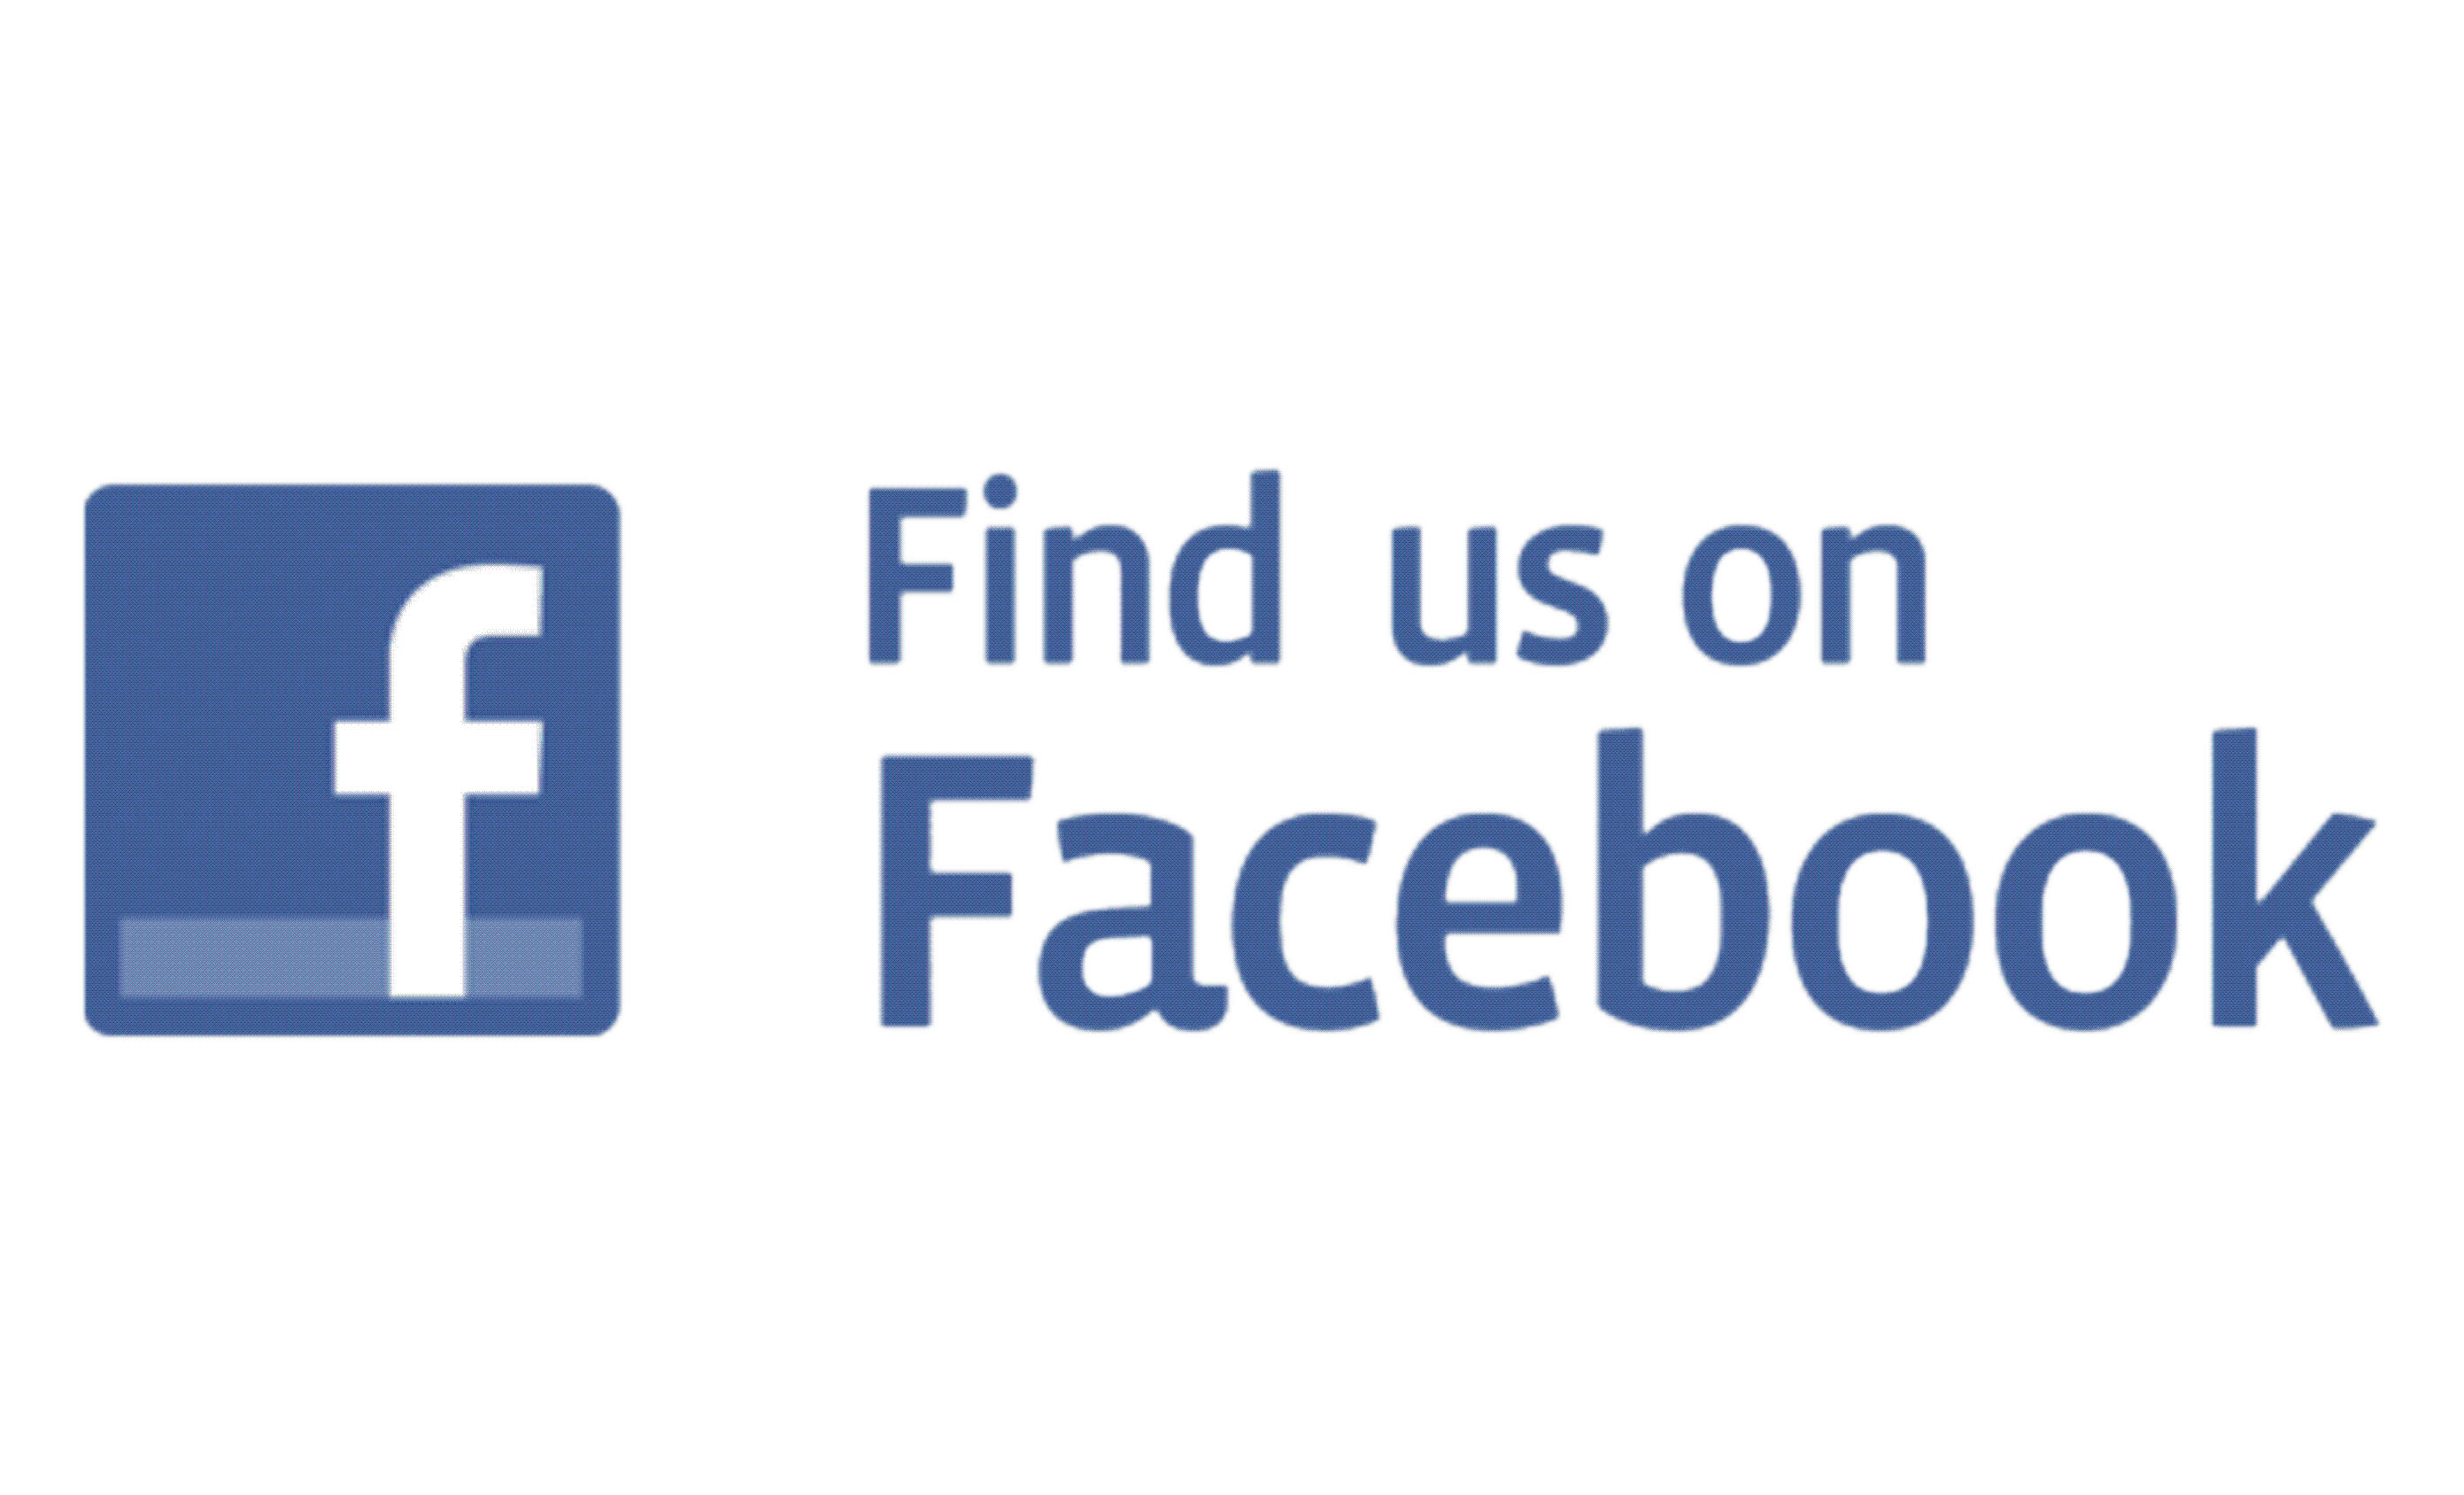 Join Us On Facebook Logo - Find us on facebook Logos